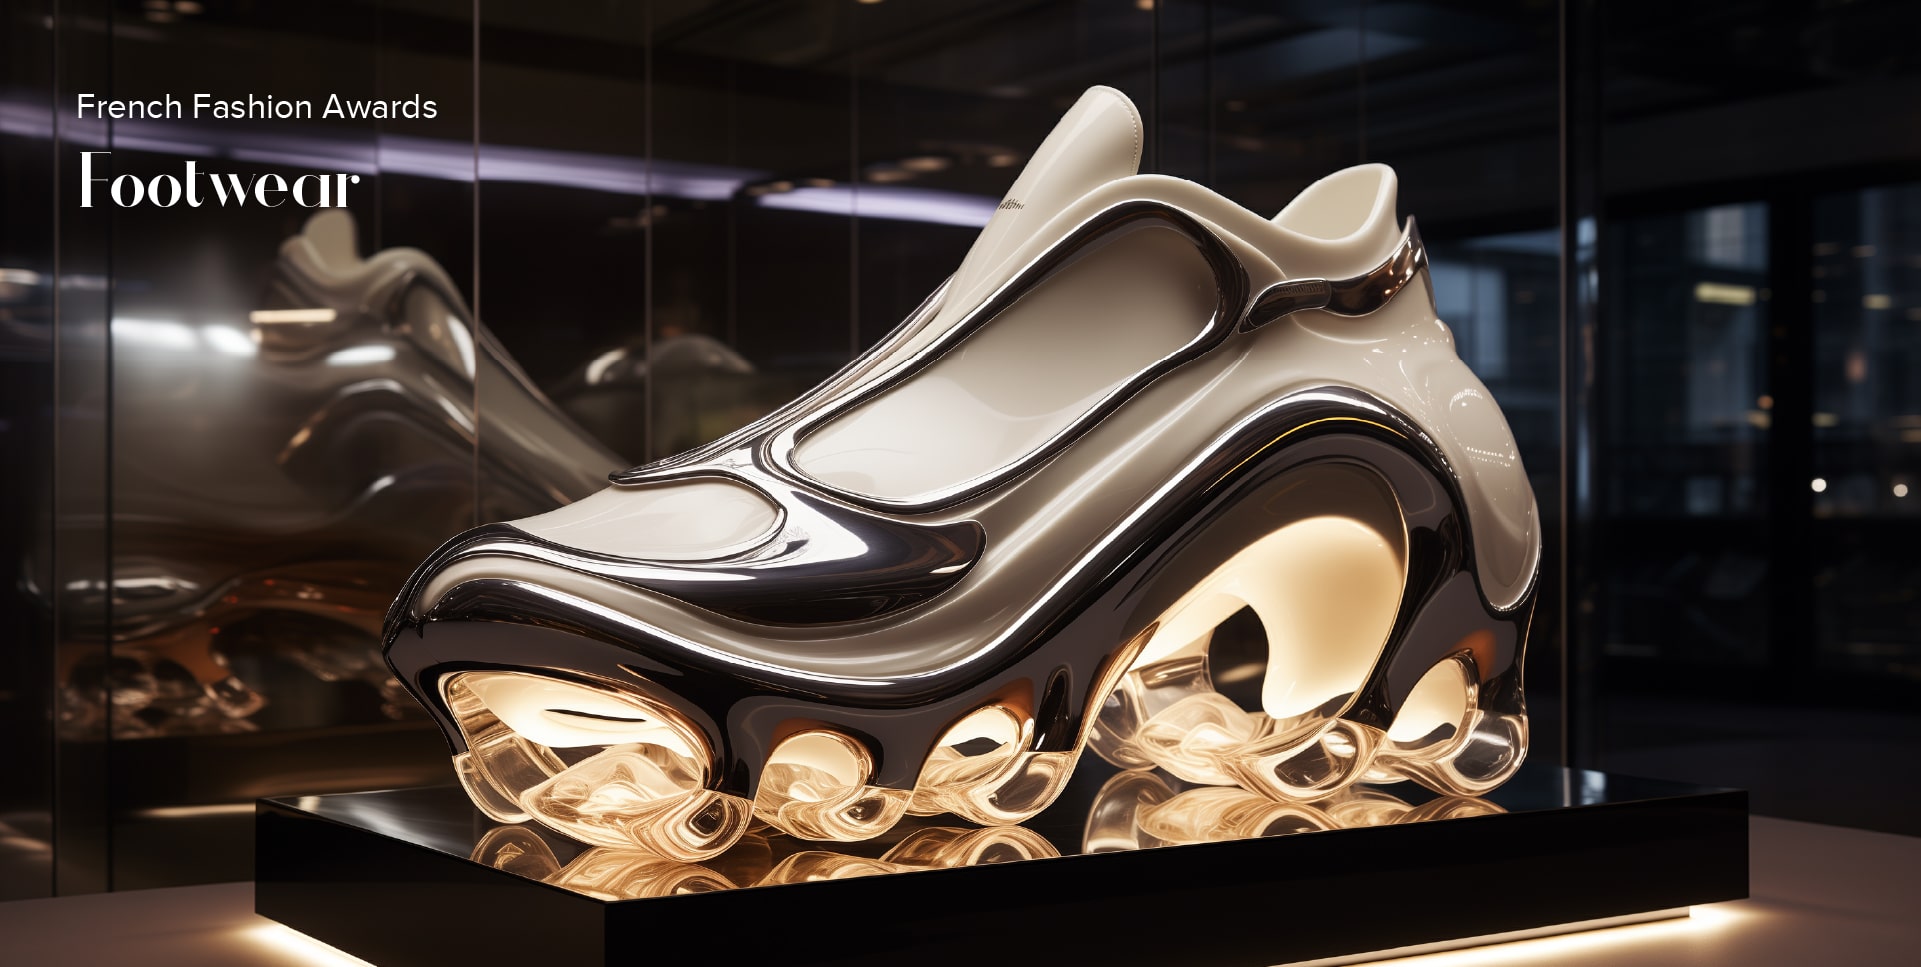 French Fashion Awards - Footwear Design